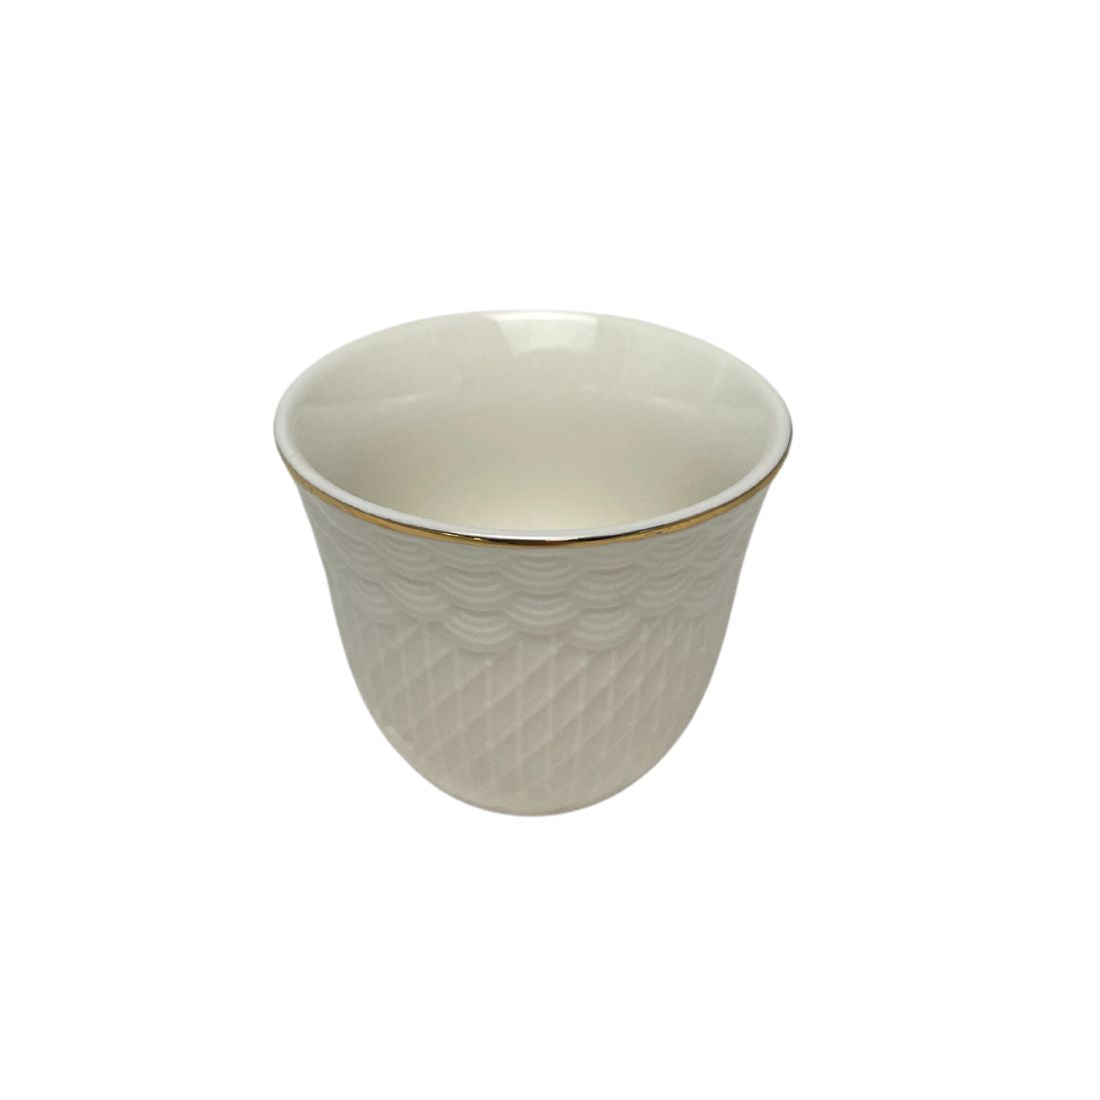 12-Piece Porcelain Arabic Coffee Cup Set